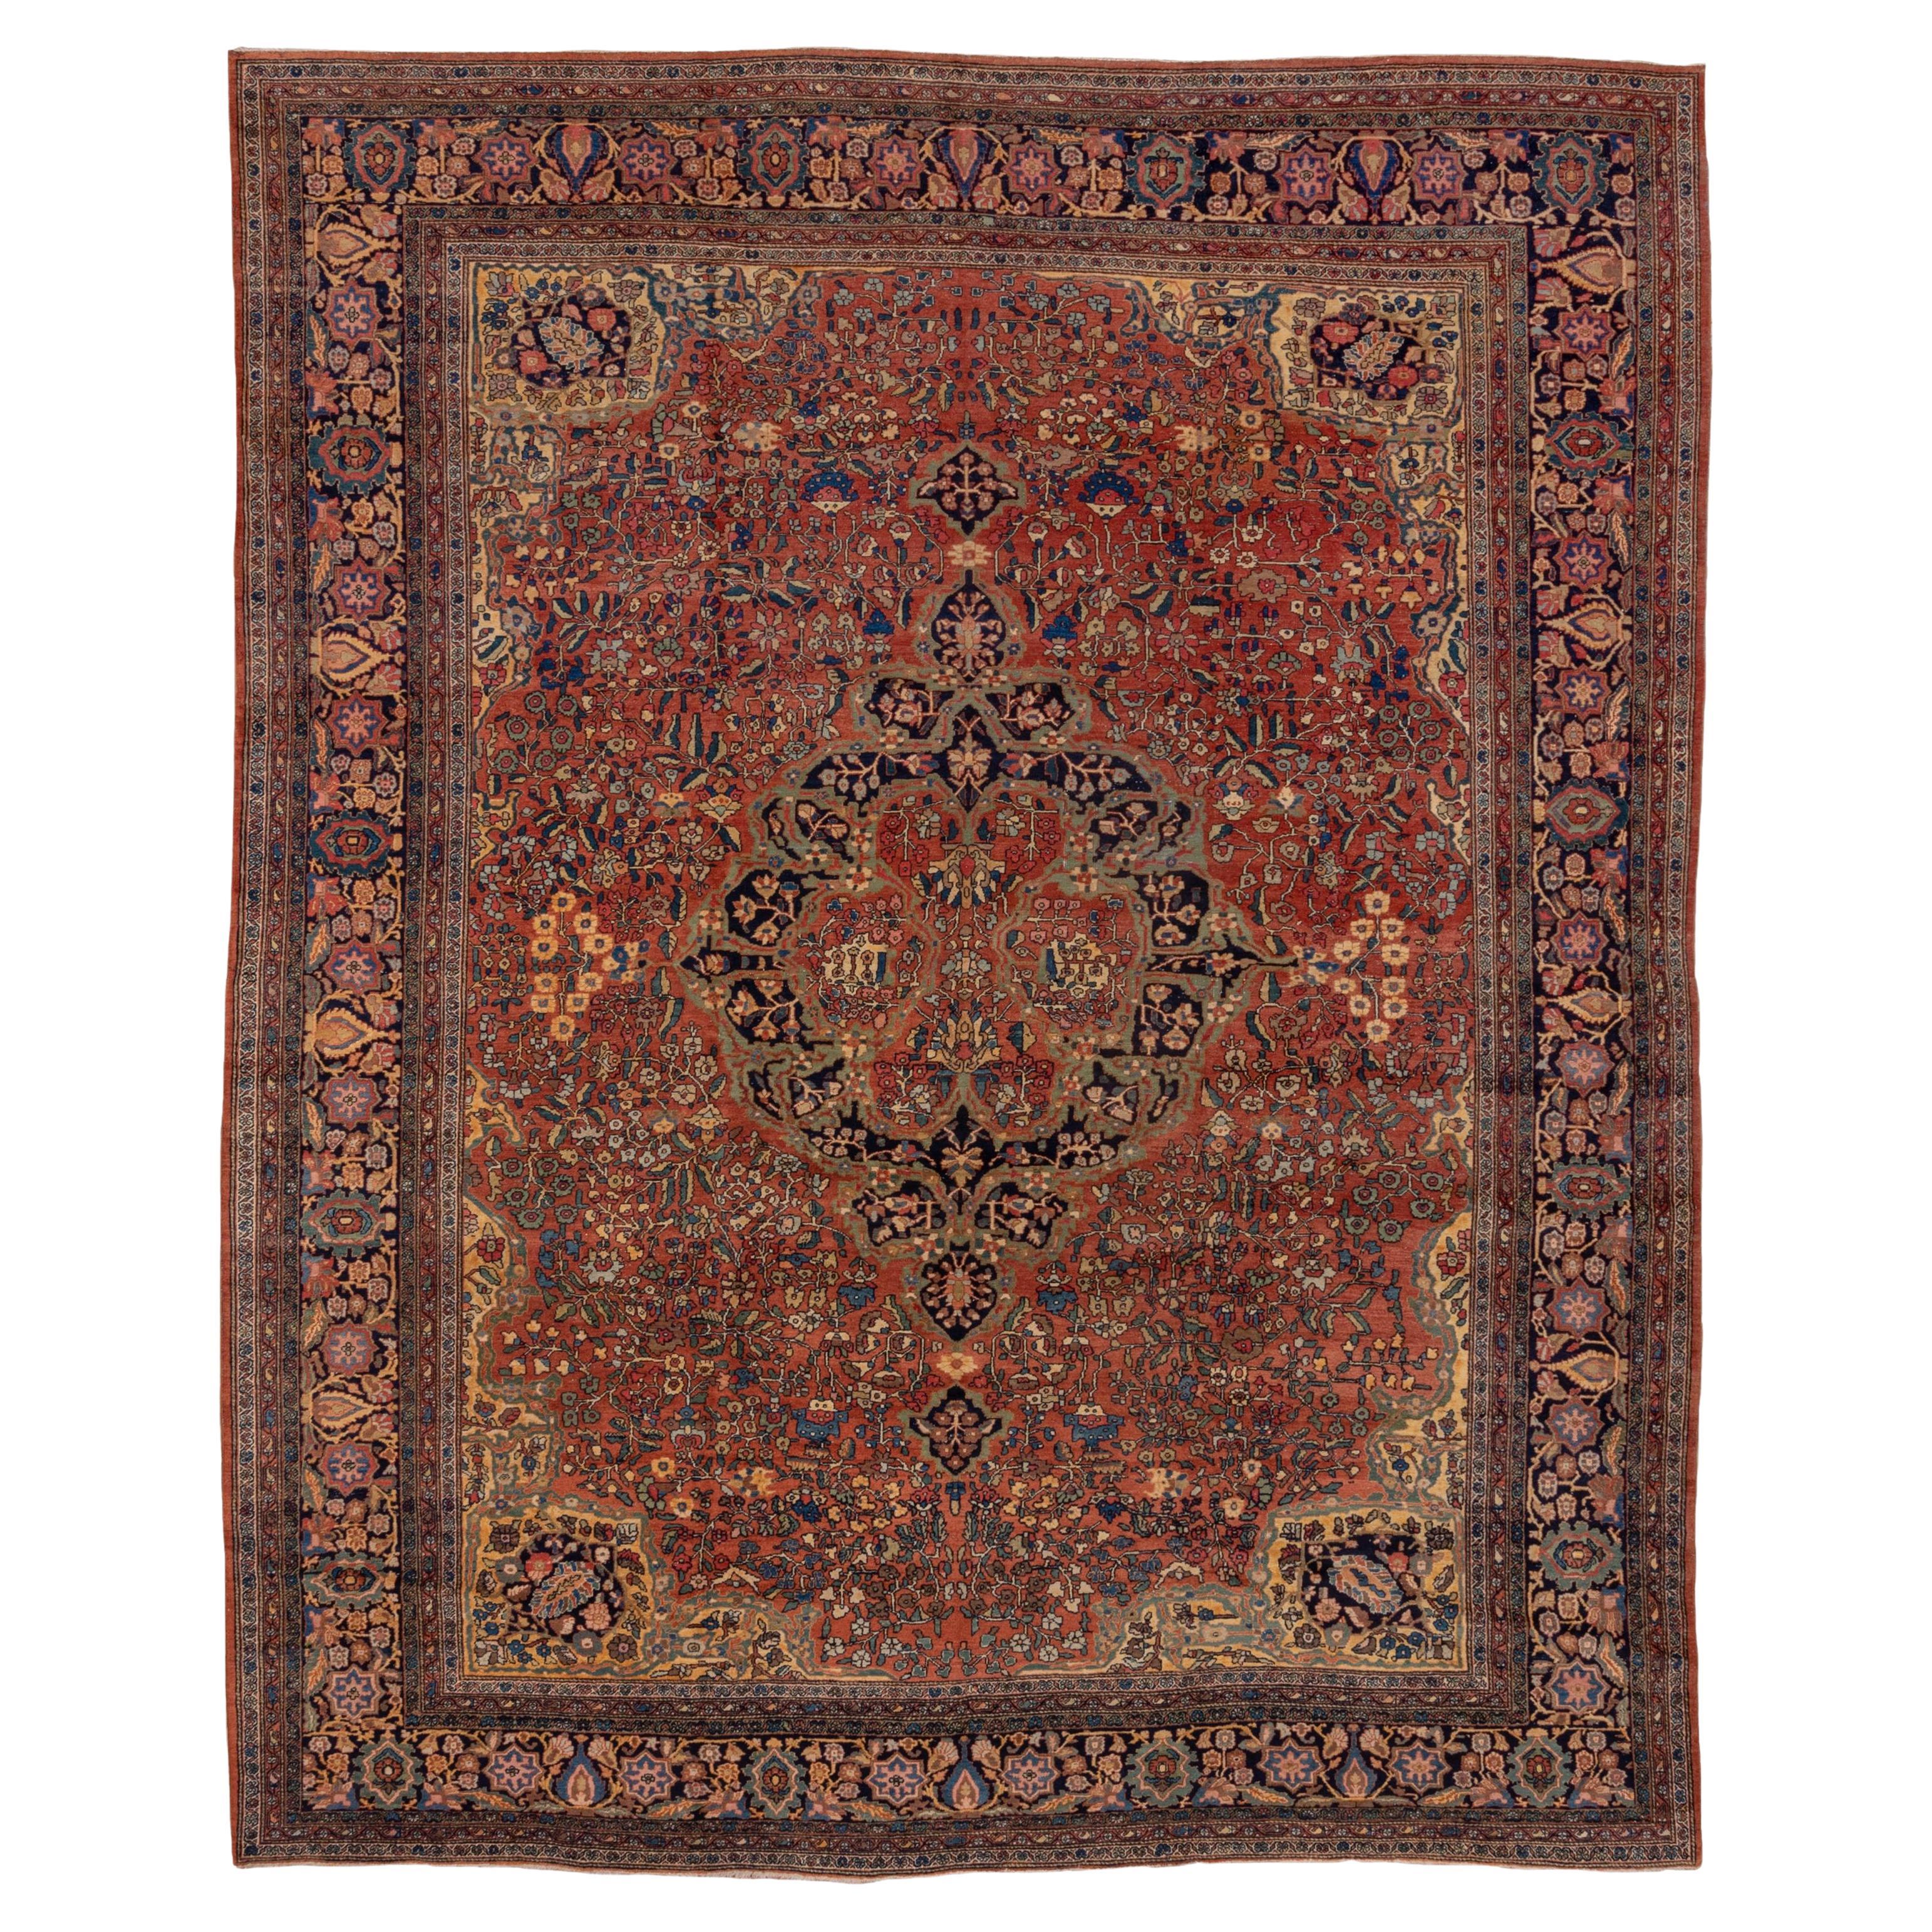 Antique Farahan Sarouk Carpet, Bold Colors, Bold Palette, Center Medallion